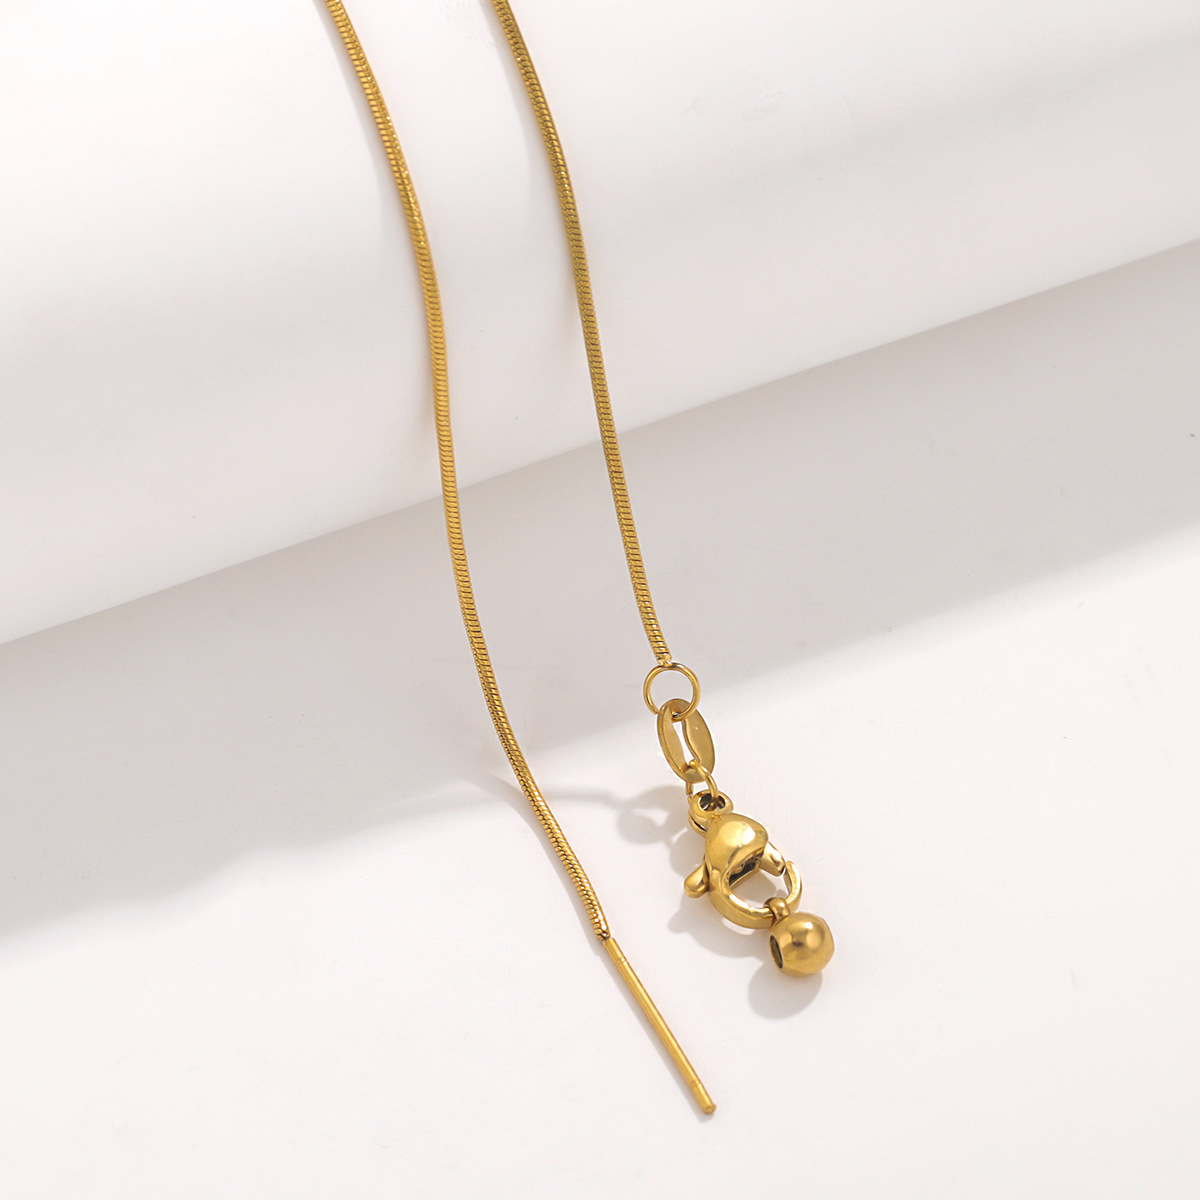 Gold - Round snake chain chain